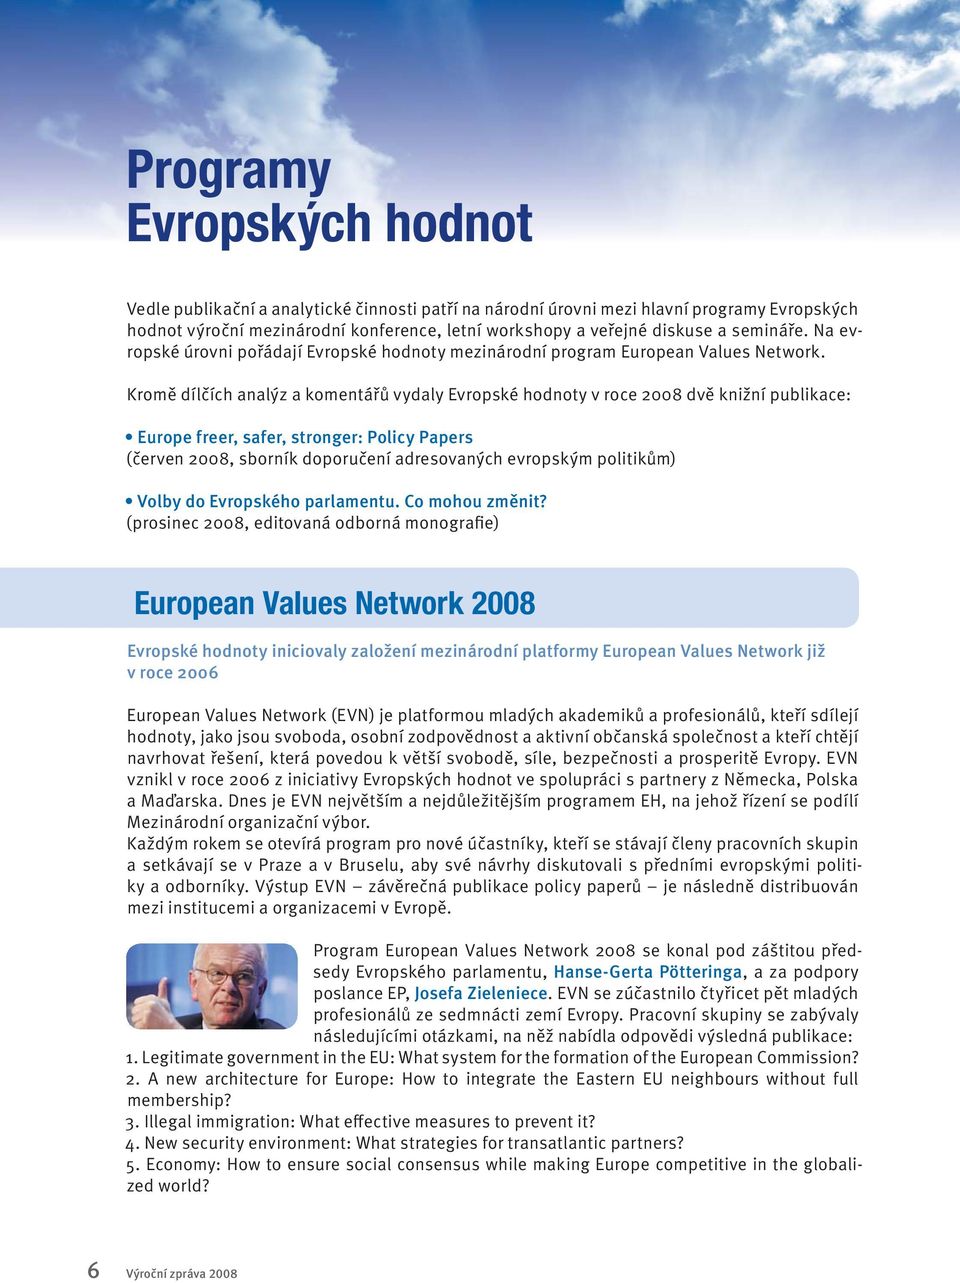 Kromě dílčích analýz a komentářů vydaly Evropské hodnoty v roce 2008 dvě knižní publikace: Europe freer, safer, stronger: Policy Papers (červen 2008, sborník doporučení adresovaných evropským